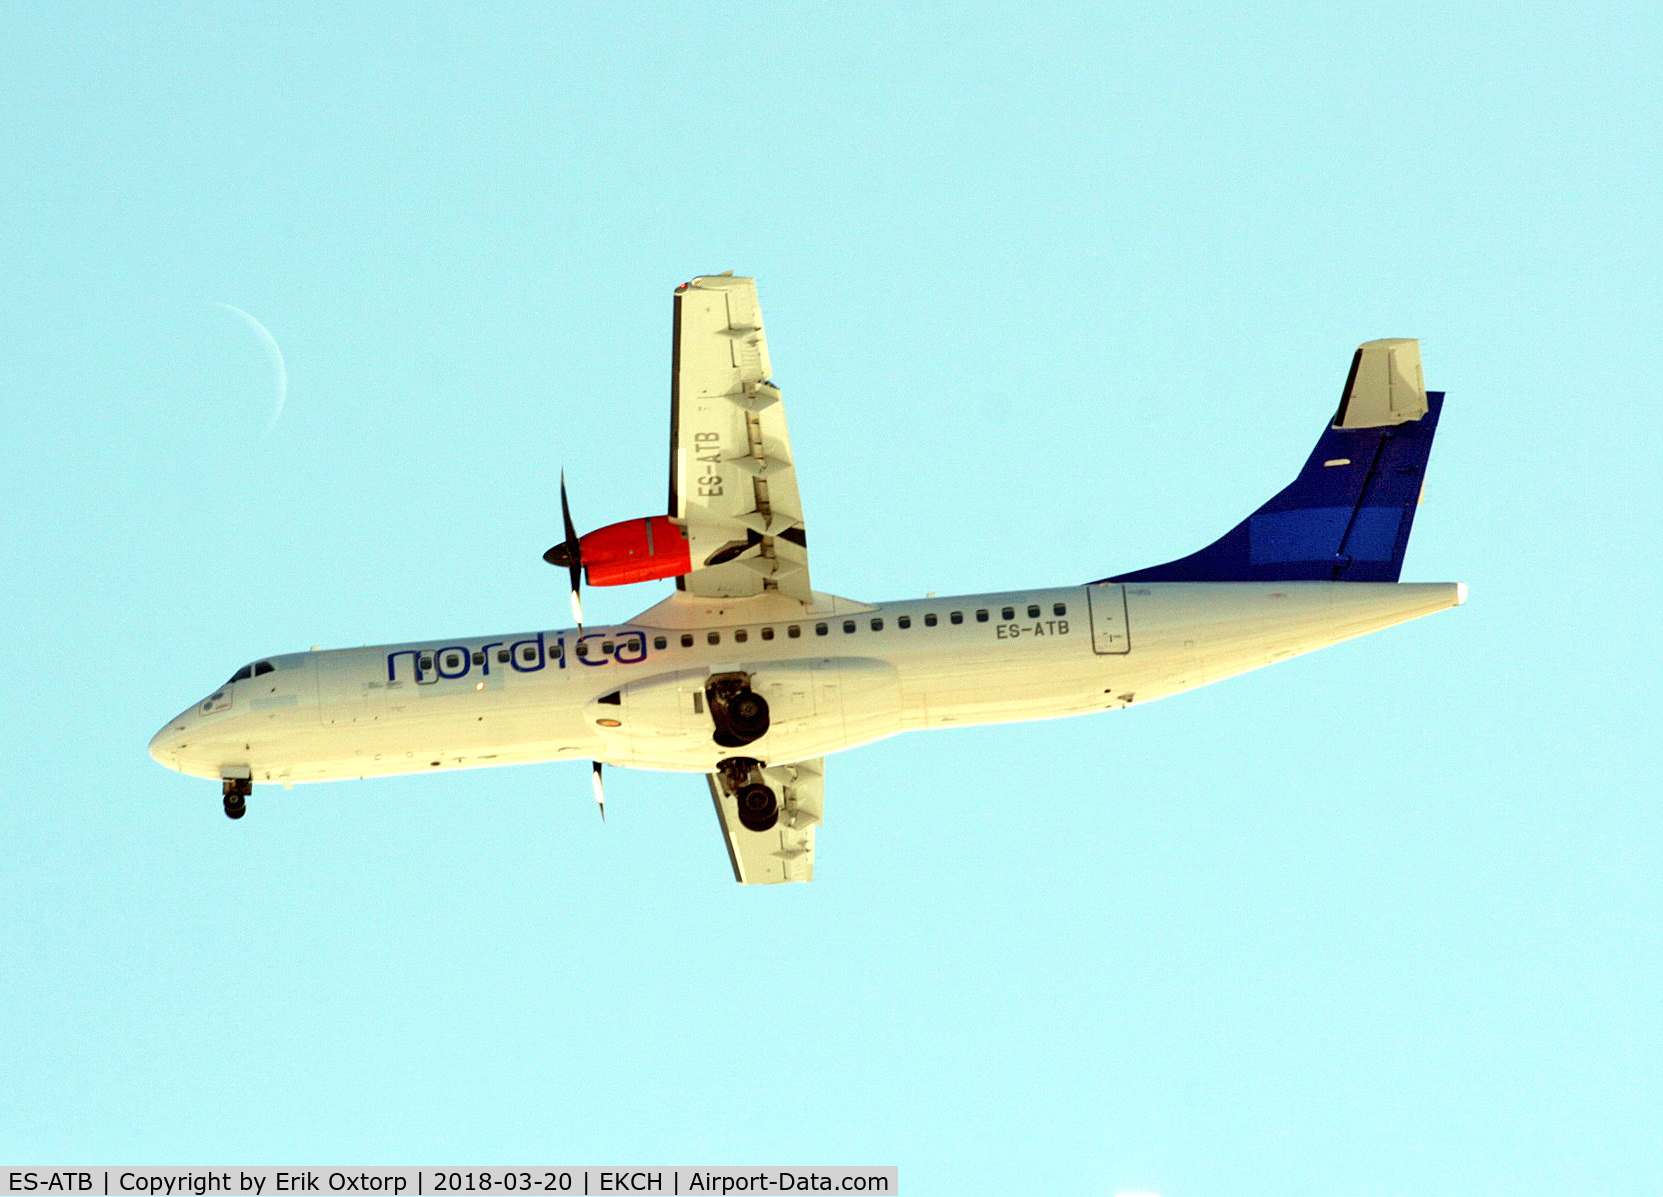 ES-ATB, 2012 ATR 72-600 (72-212A) C/N 1028, ES-ATB in basic SAS c/s with Nordica titles.
Landing rw 04R